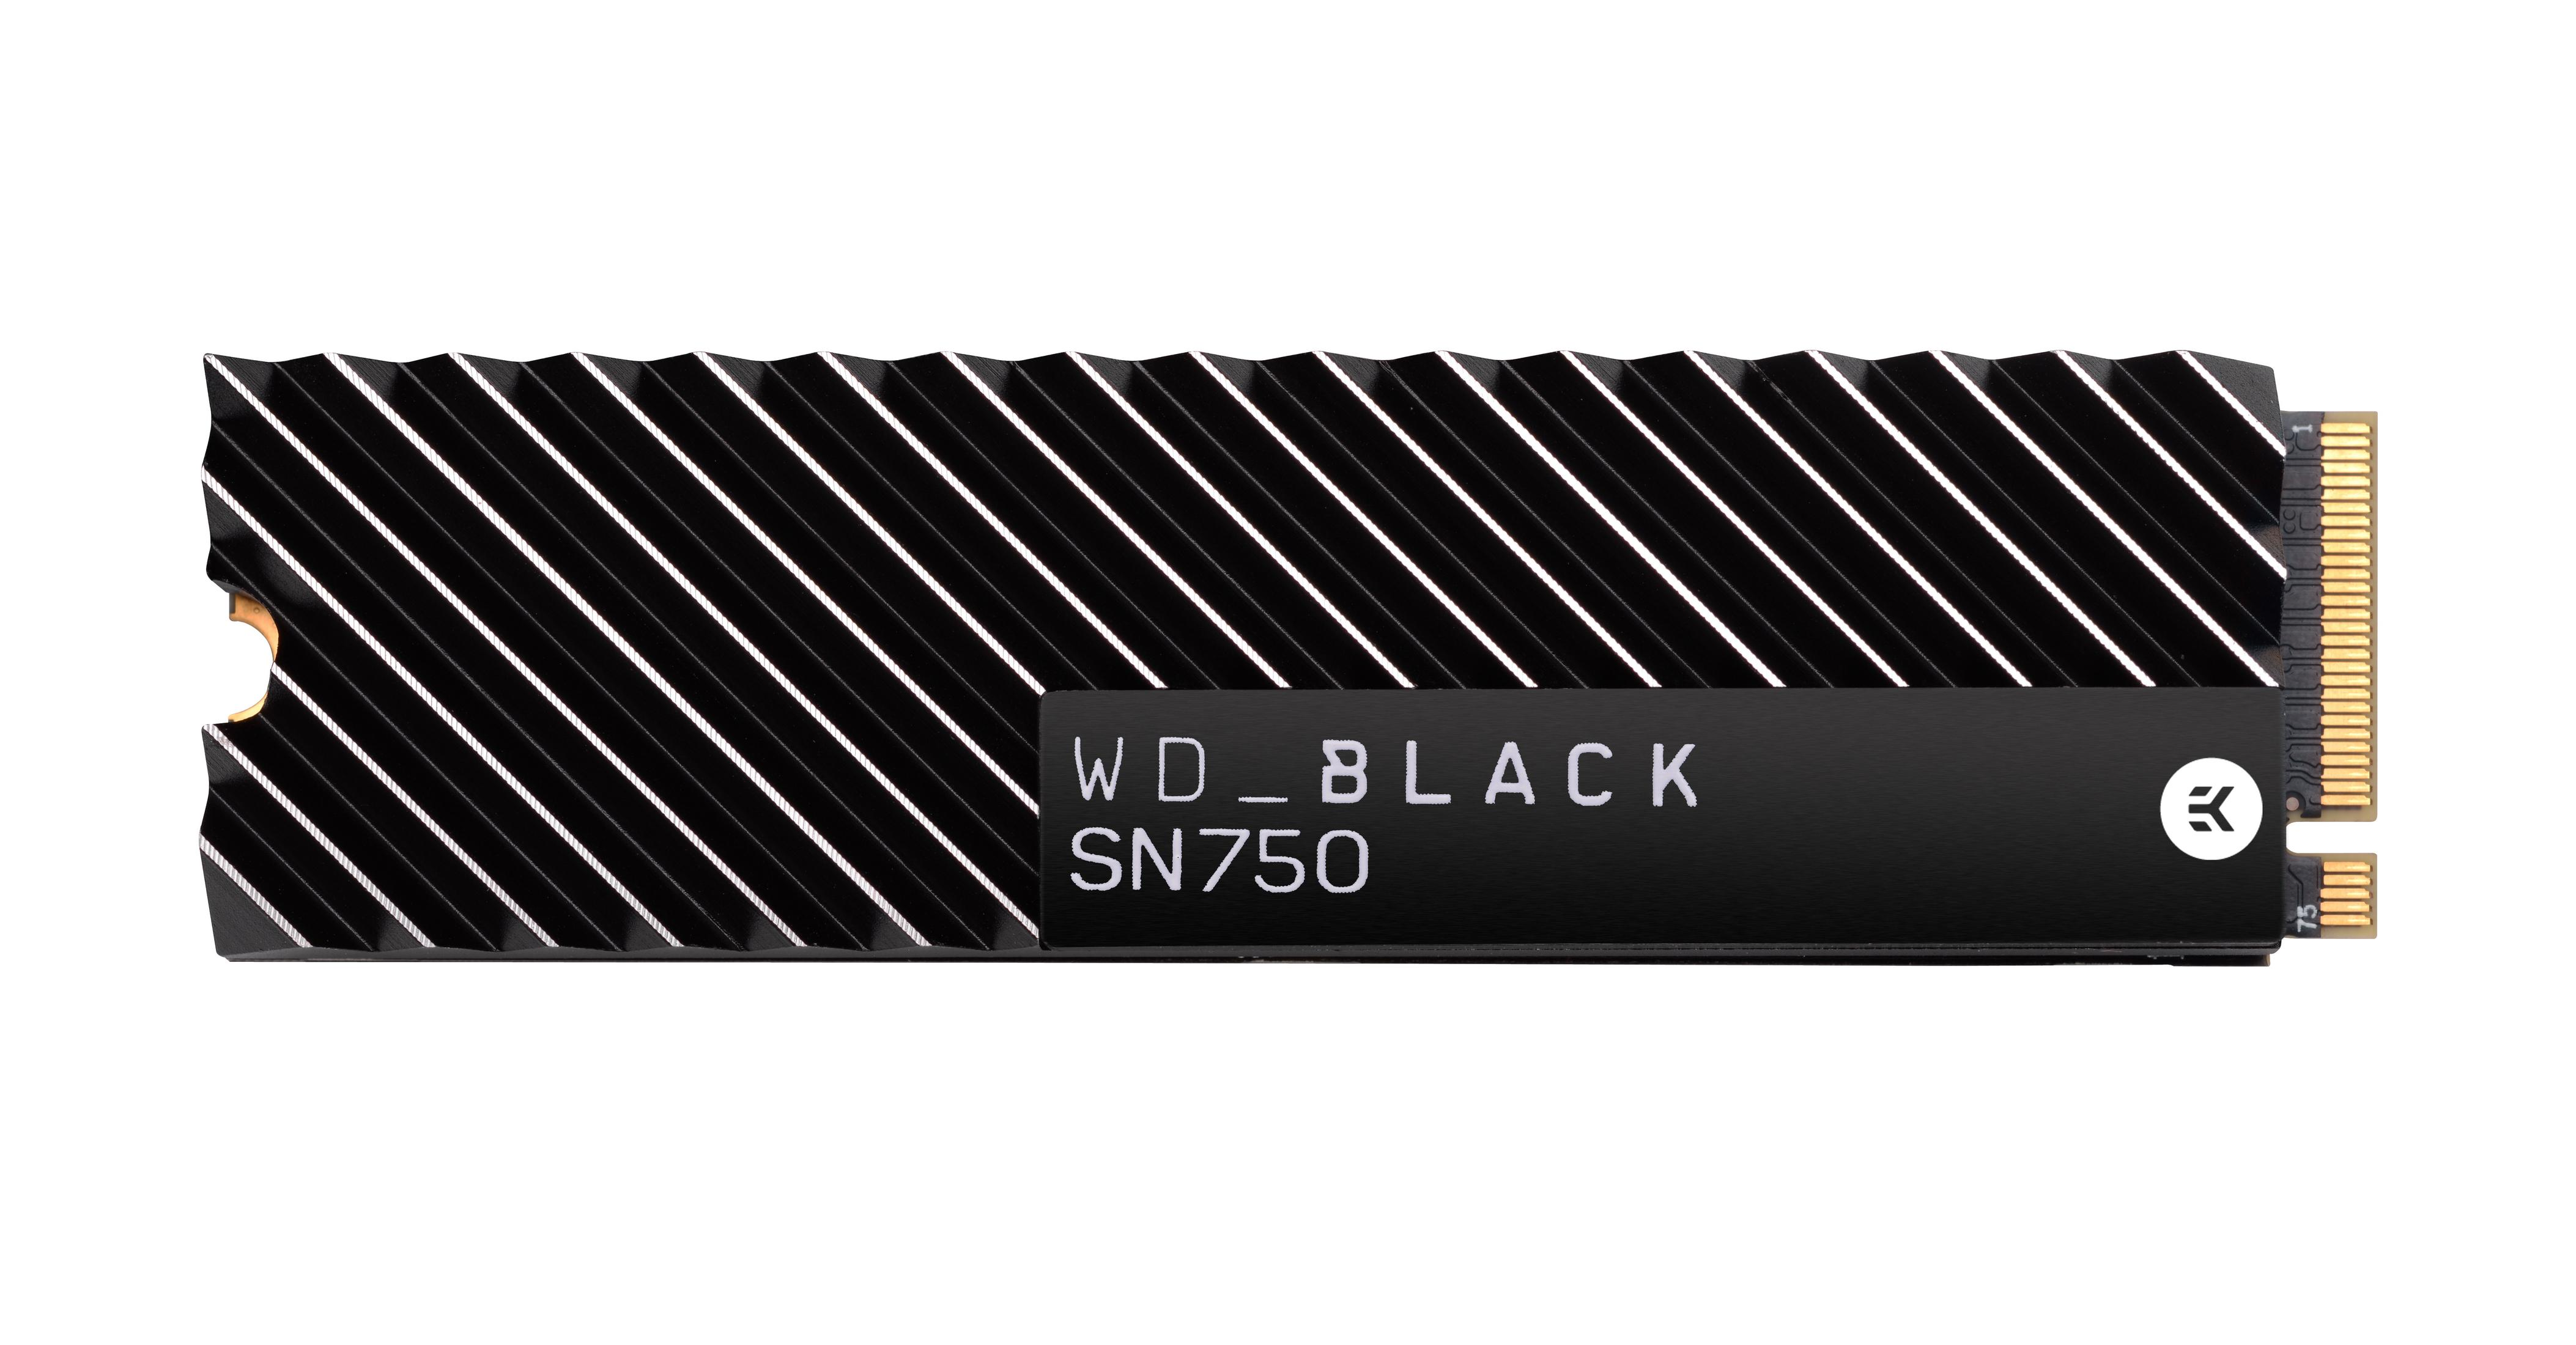 WESTERN DIGITAL WDS500G3XHC HEATSINK, BLACK GB, 500 NVME intern 500GB SN750 SSD